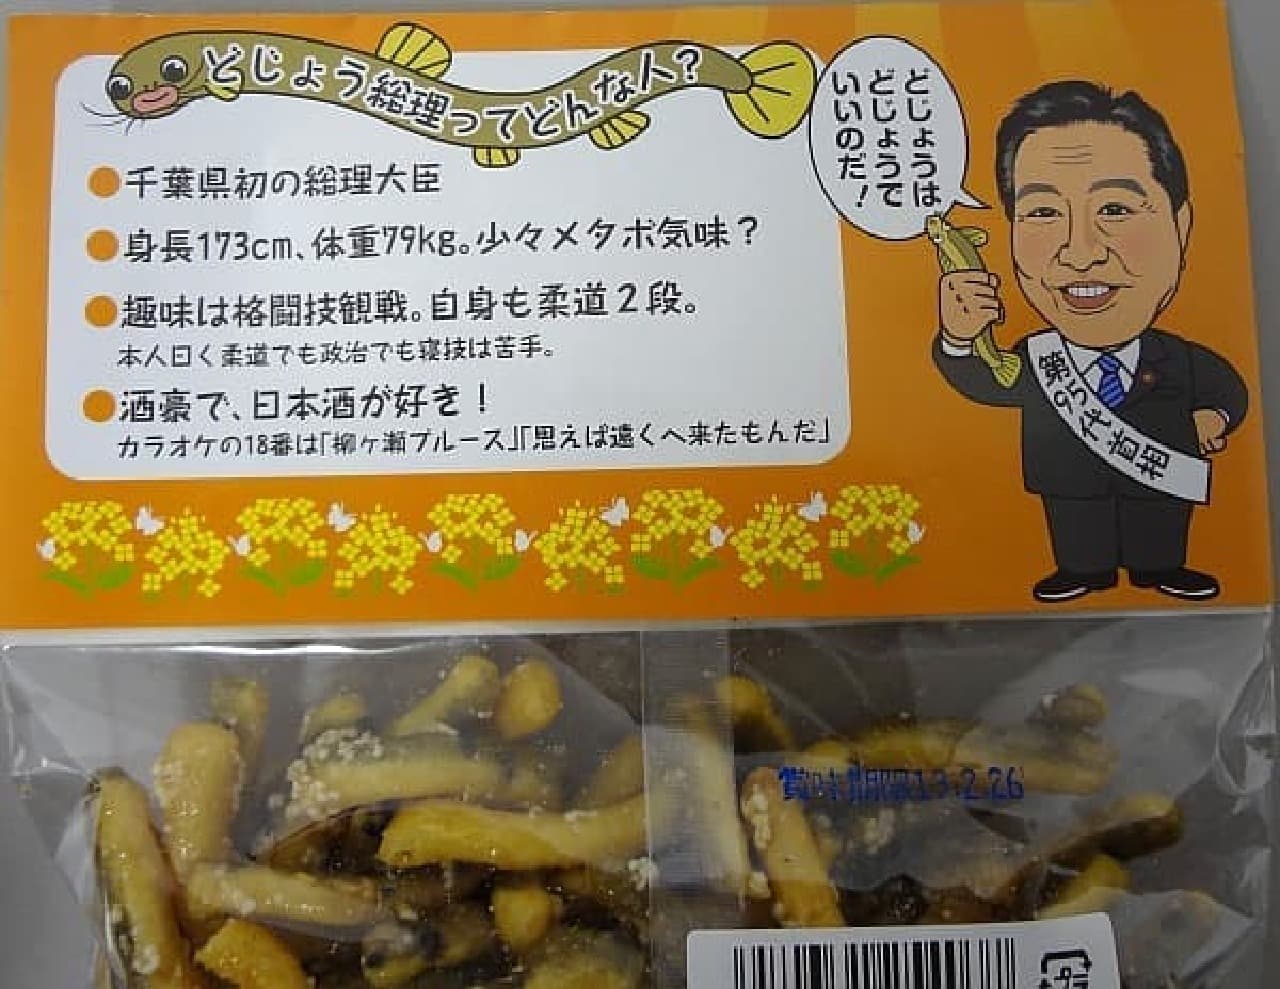 いまさらながら、野田元首相がどういう方だったのかがわかるグッズとなってます